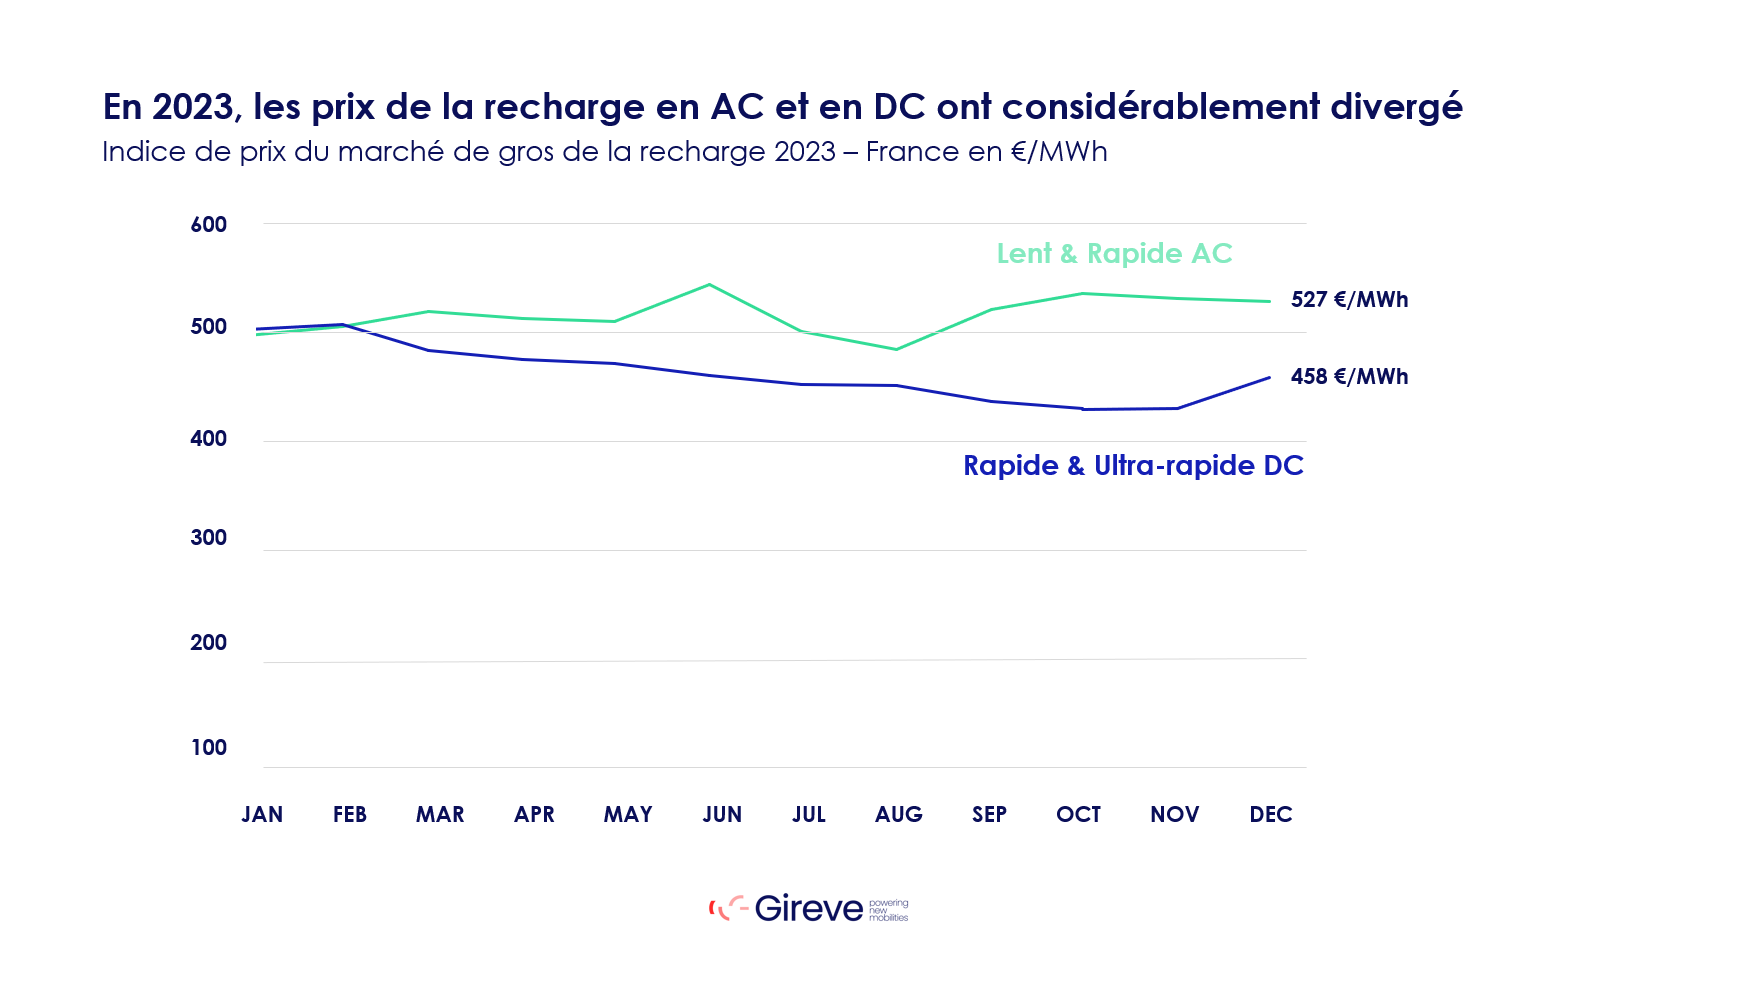 Graphique présentant lévolution de l'indice de prix du marché de gros de la recharge en 2023 entre AC et DC